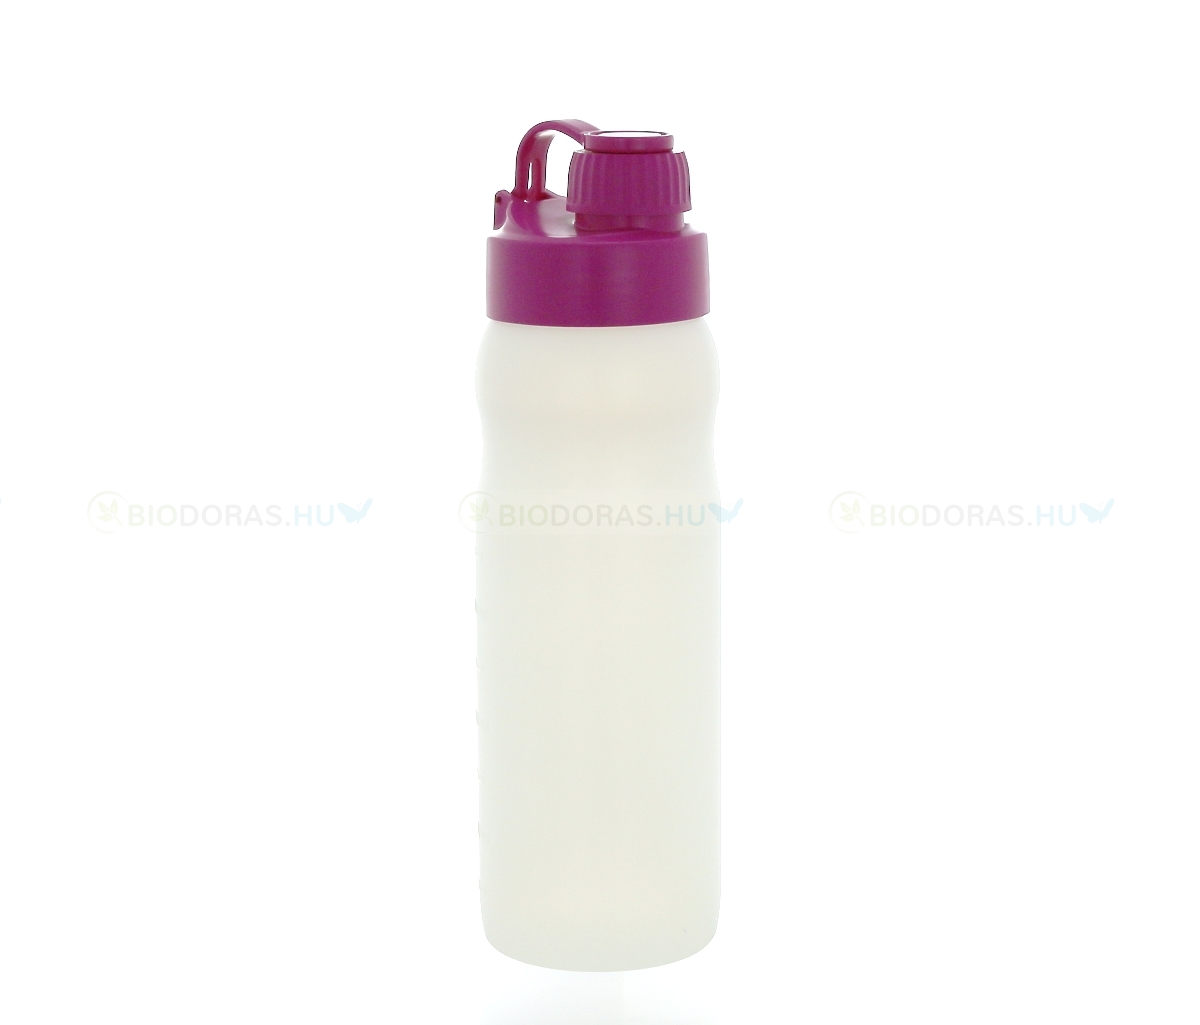 BIODORA Bioműanyag kulacs (sportpalack) visszazárható kupakkal, fehér-magenta színben - 500 ml